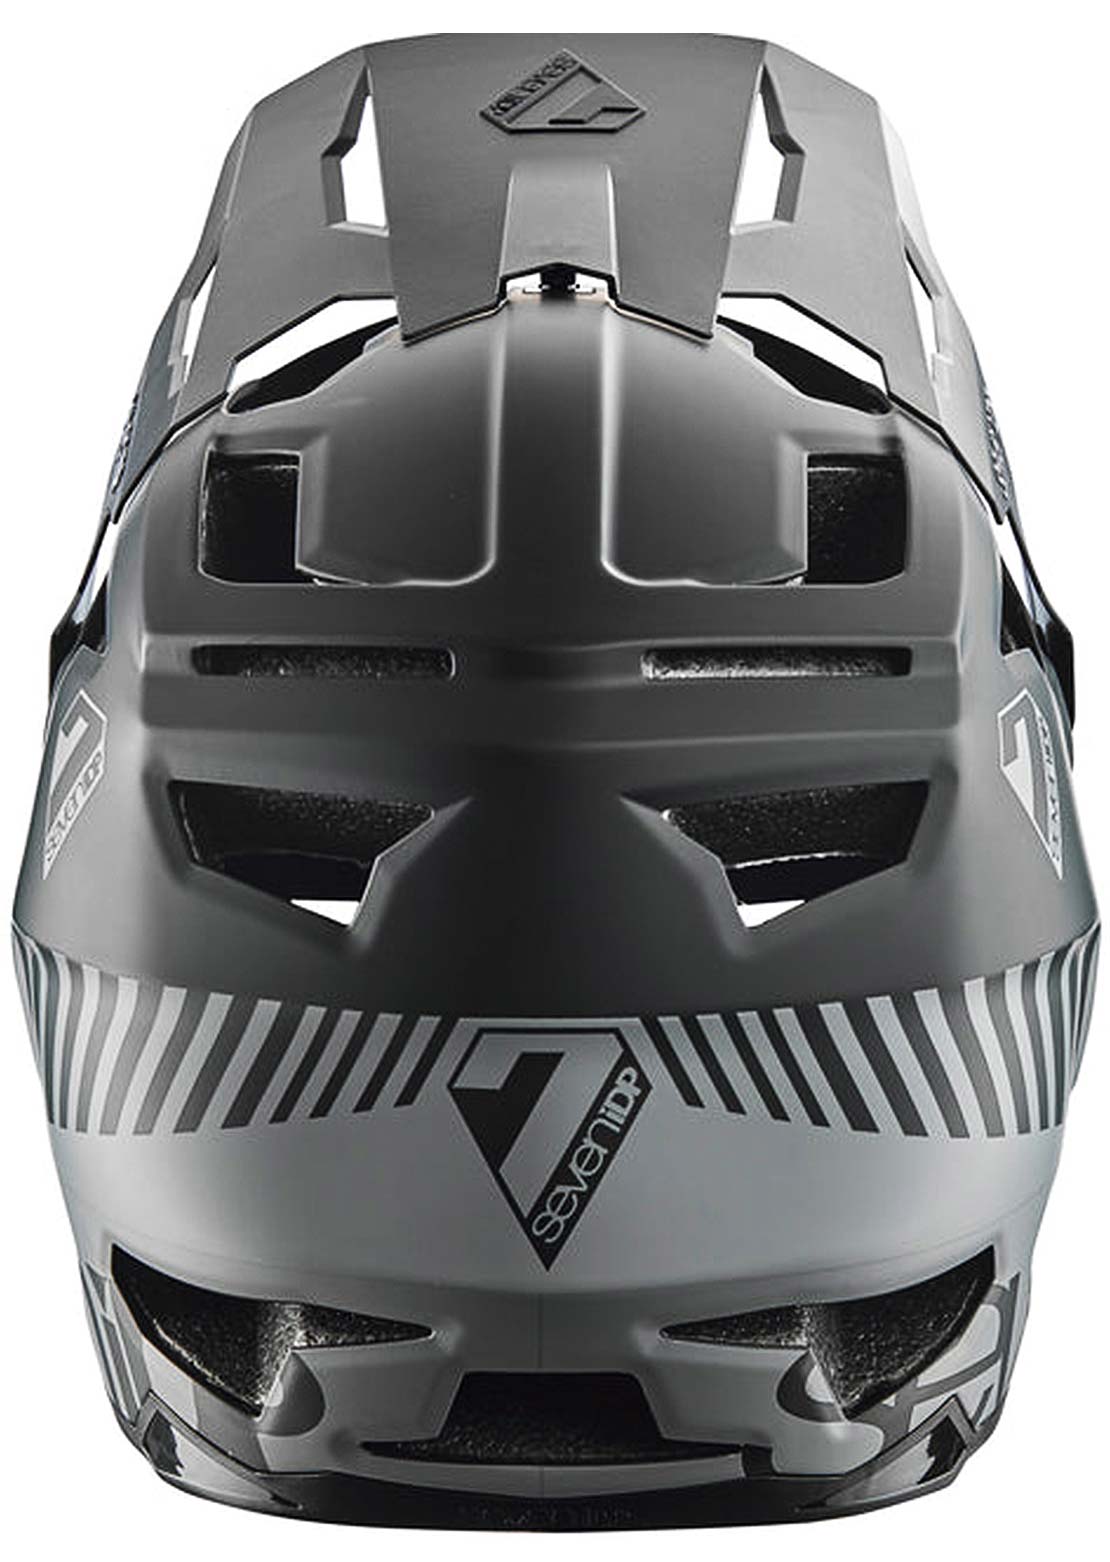 7iDP Project 23 Fiber Glass Downhill Helmet 59 - 60cm